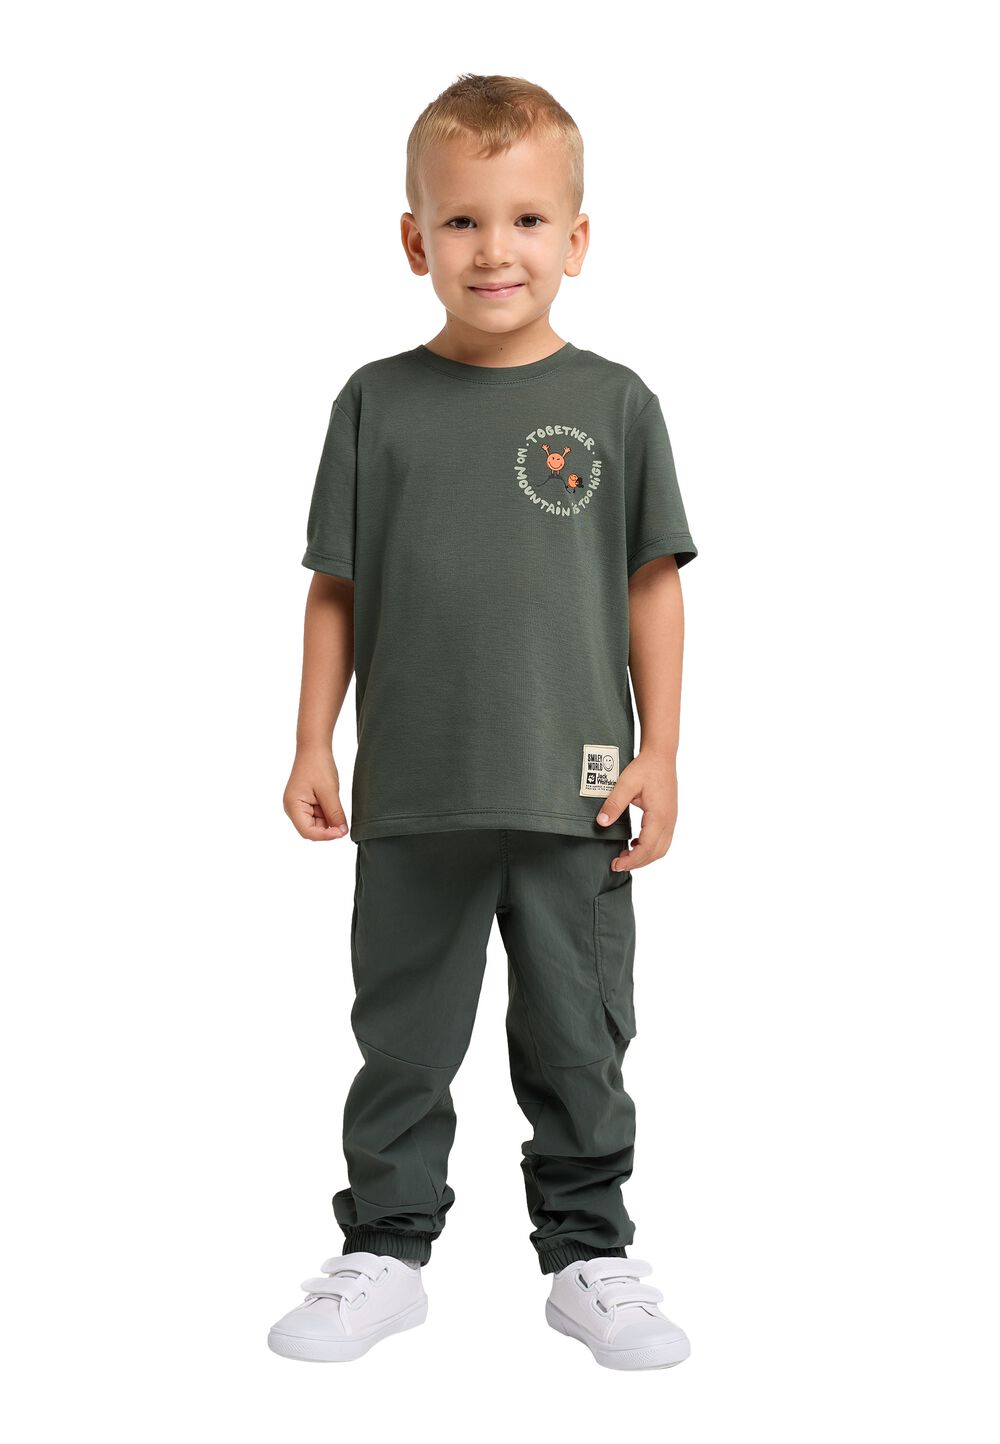 Jack Wolfskin Funktionsshirt Kinder Smileyworld Together T-Shirt Kids 128 grau slate green von Jack Wolfskin